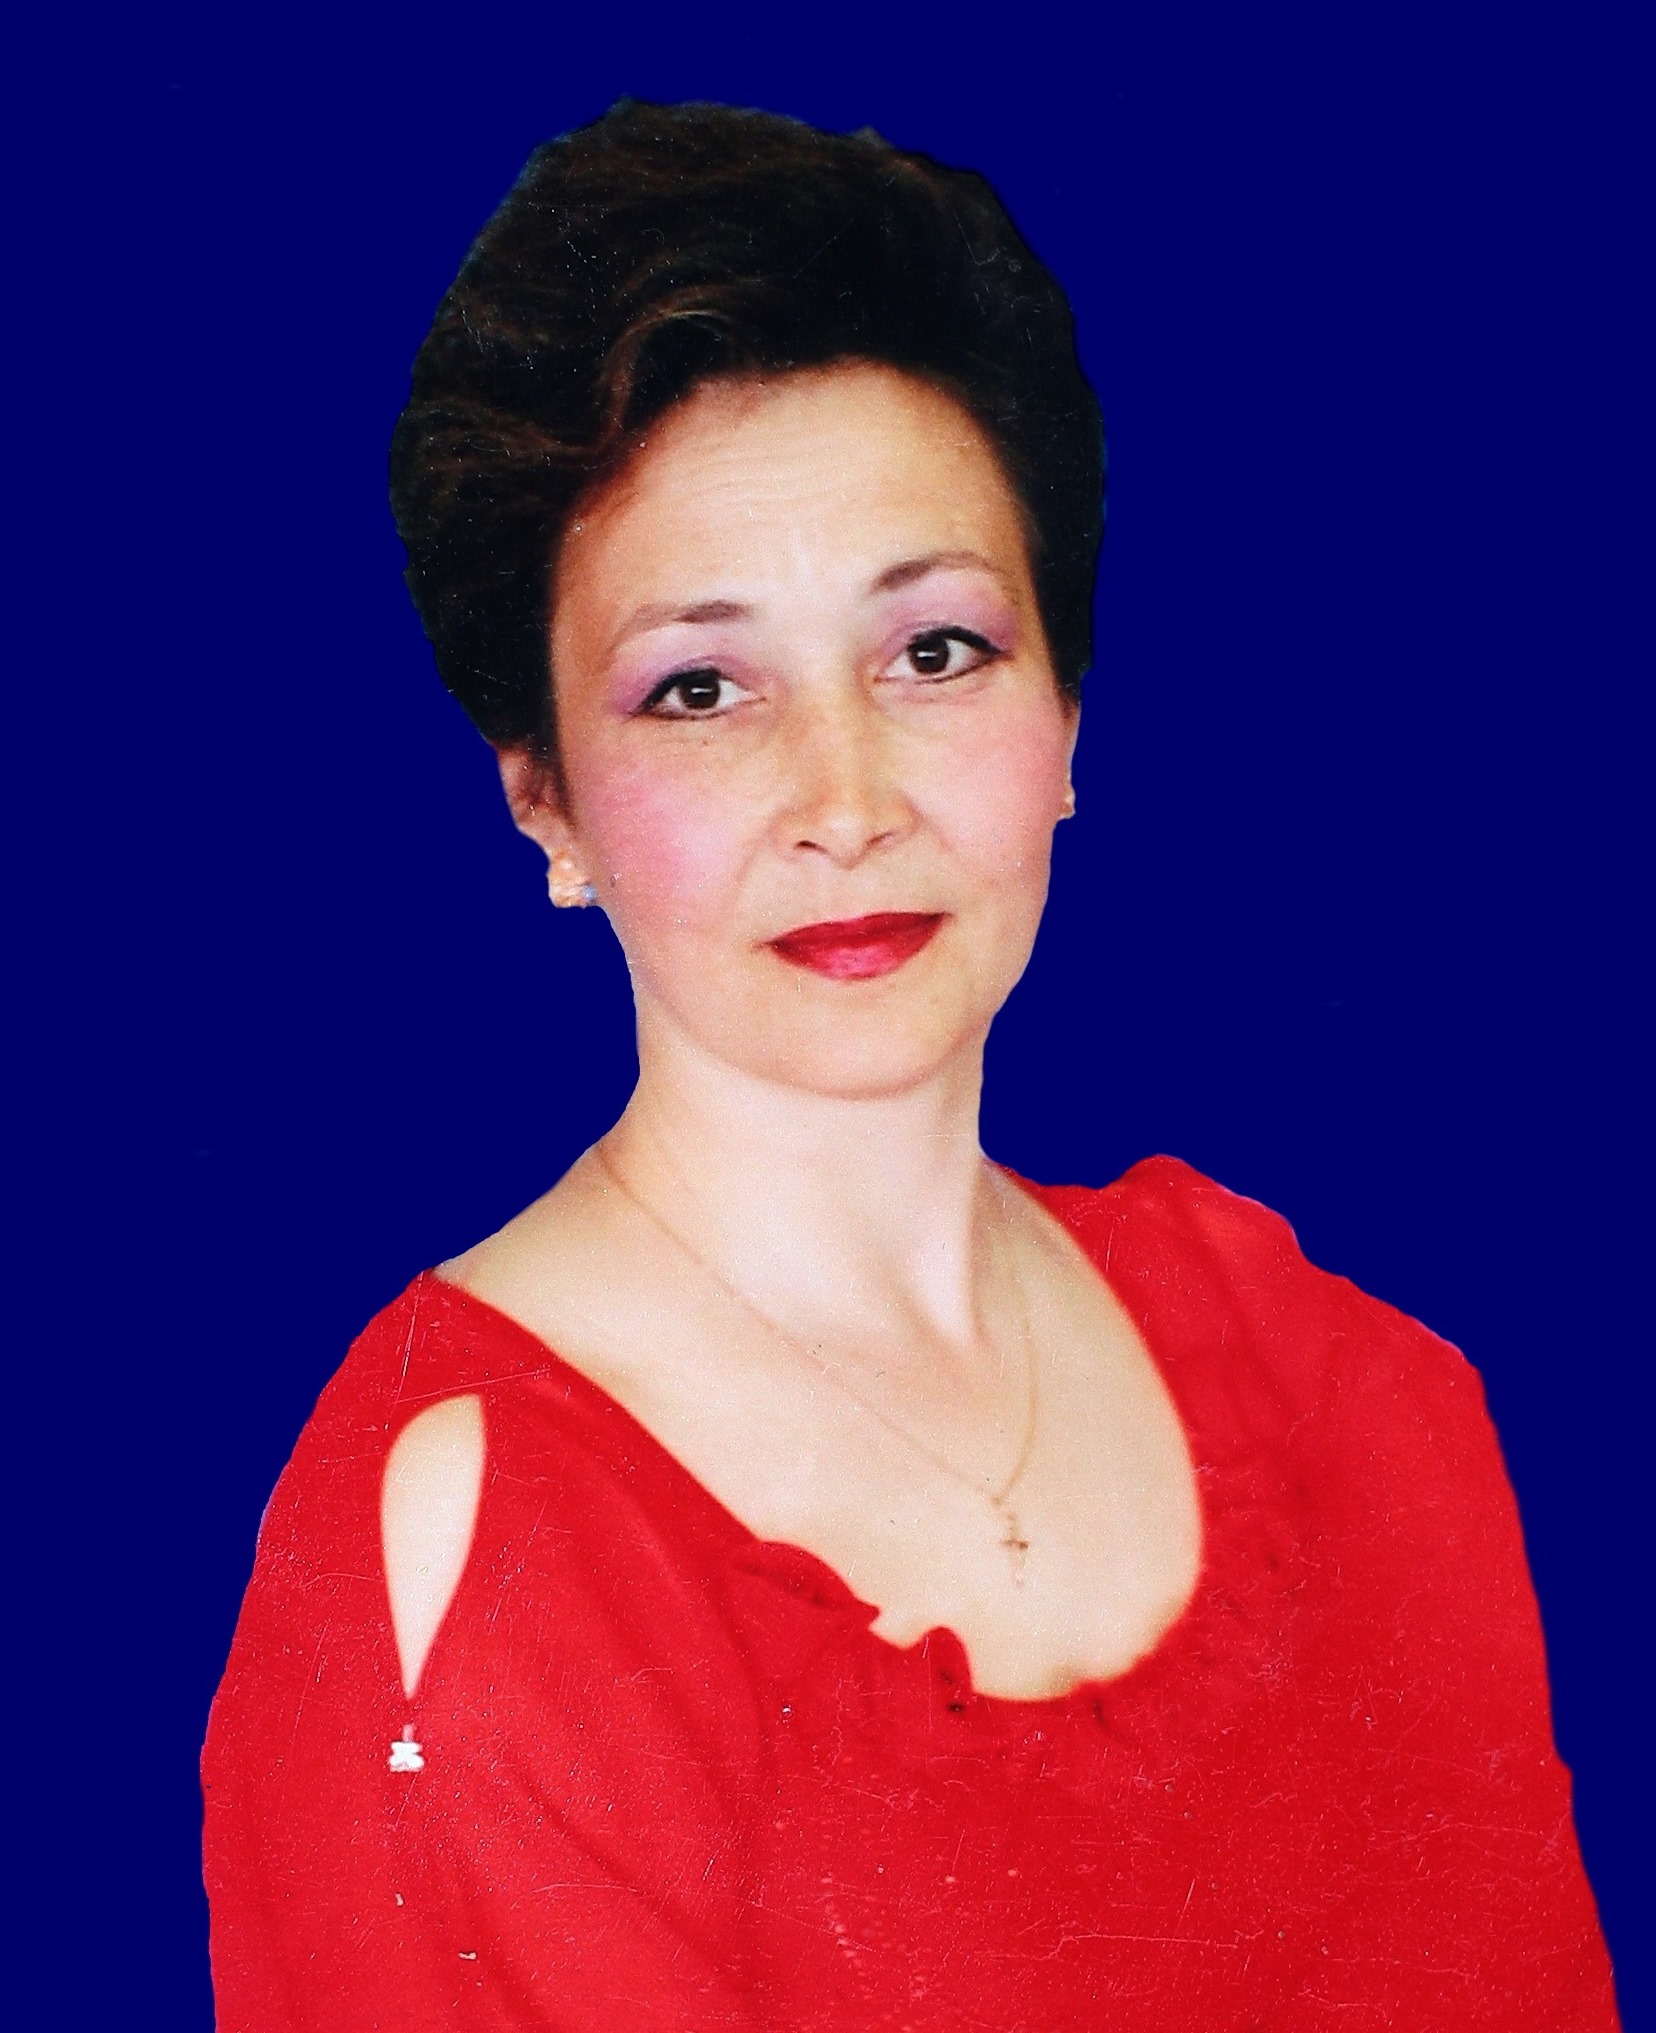 Кузнецова Ирина Николаевна.